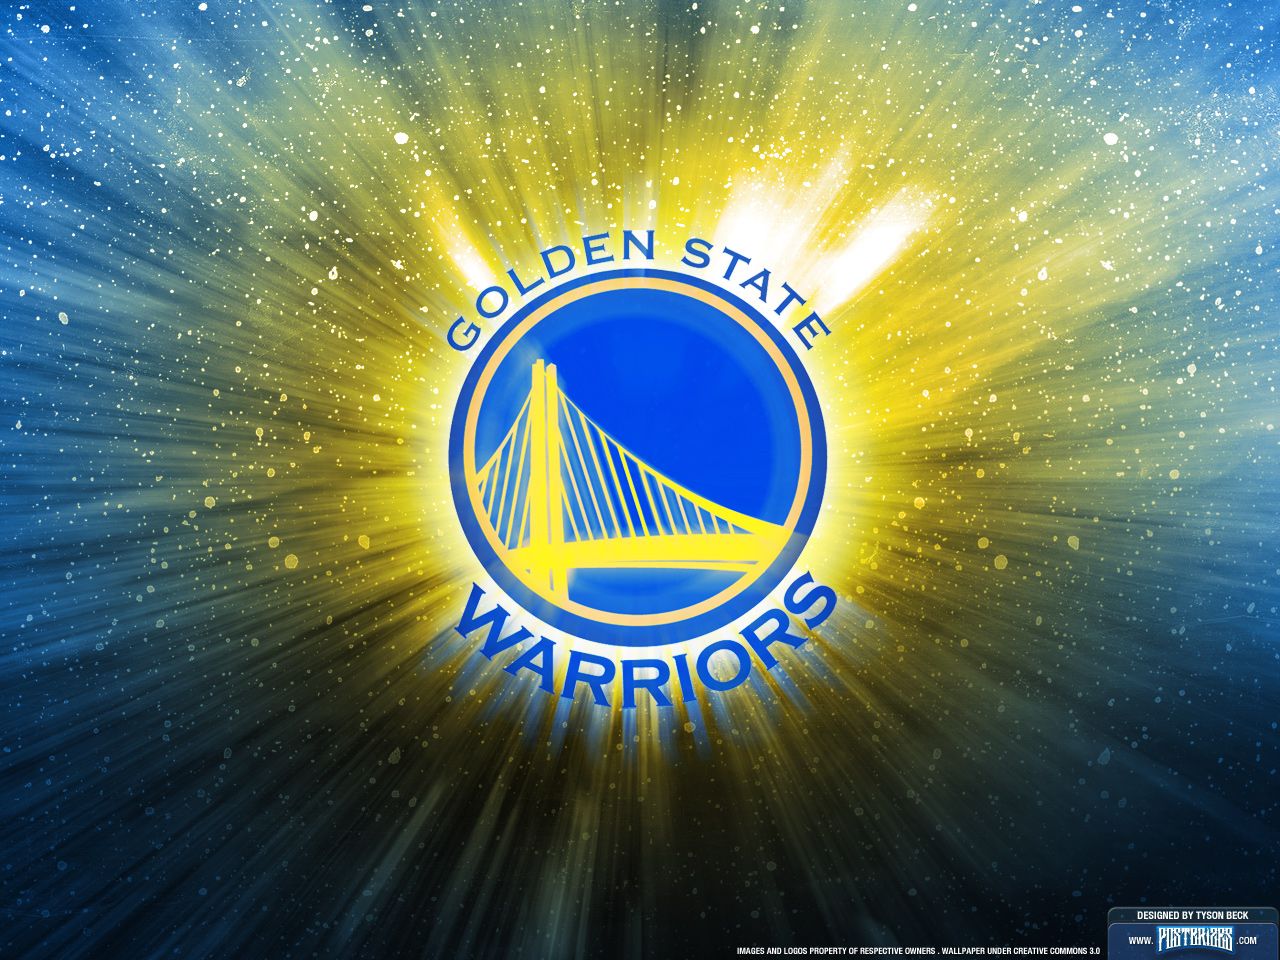 Golden State Warriors Cool Logos - HD Wallpaper 